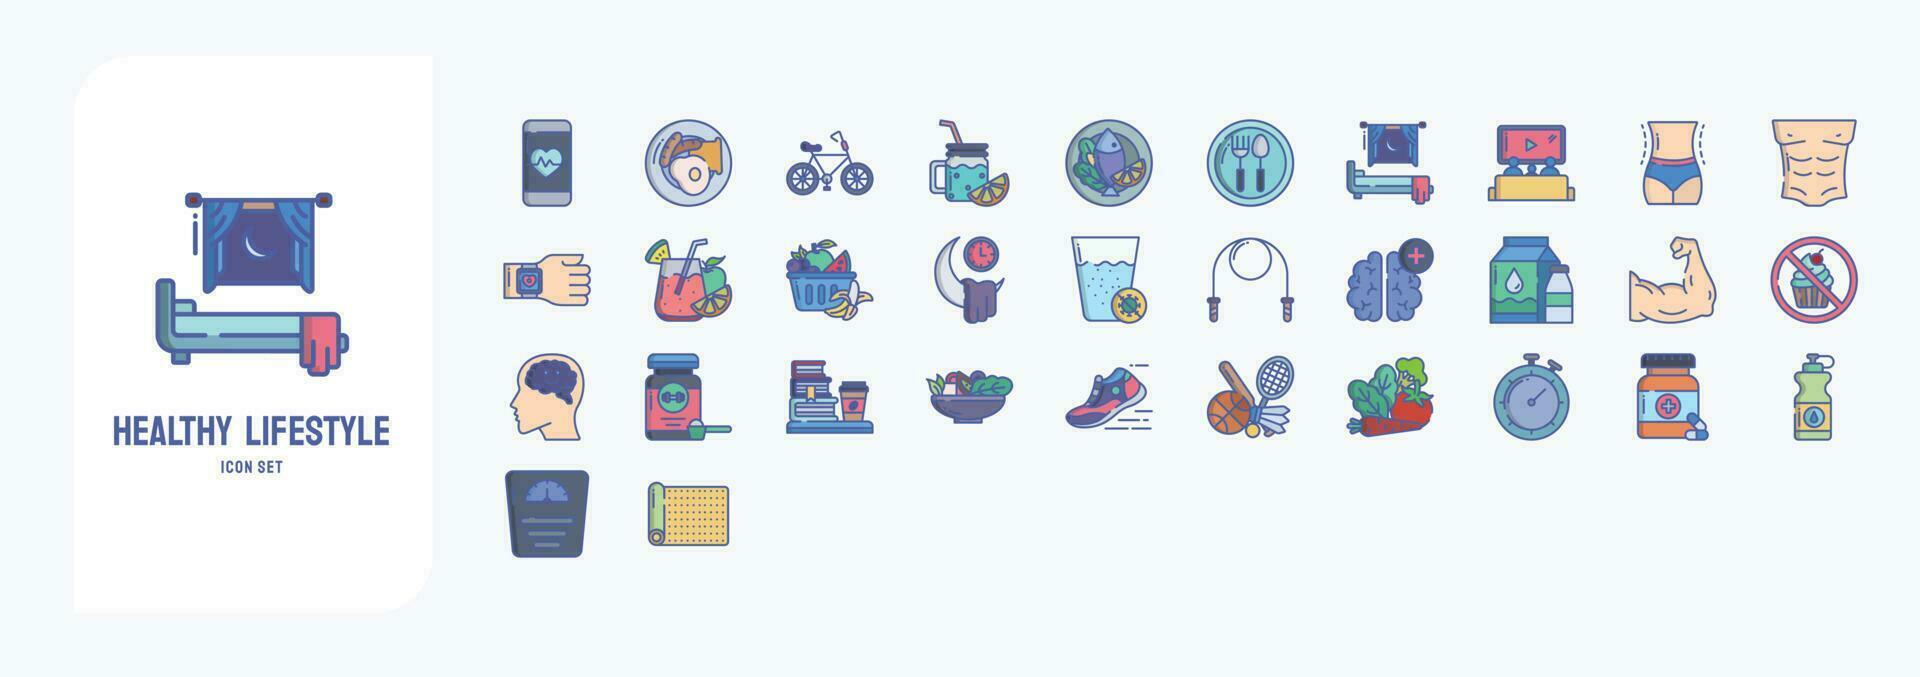 friska livsstil, Inklusive ikoner tycka om frukost, cykel, diet måltid, diet och Mer vektor